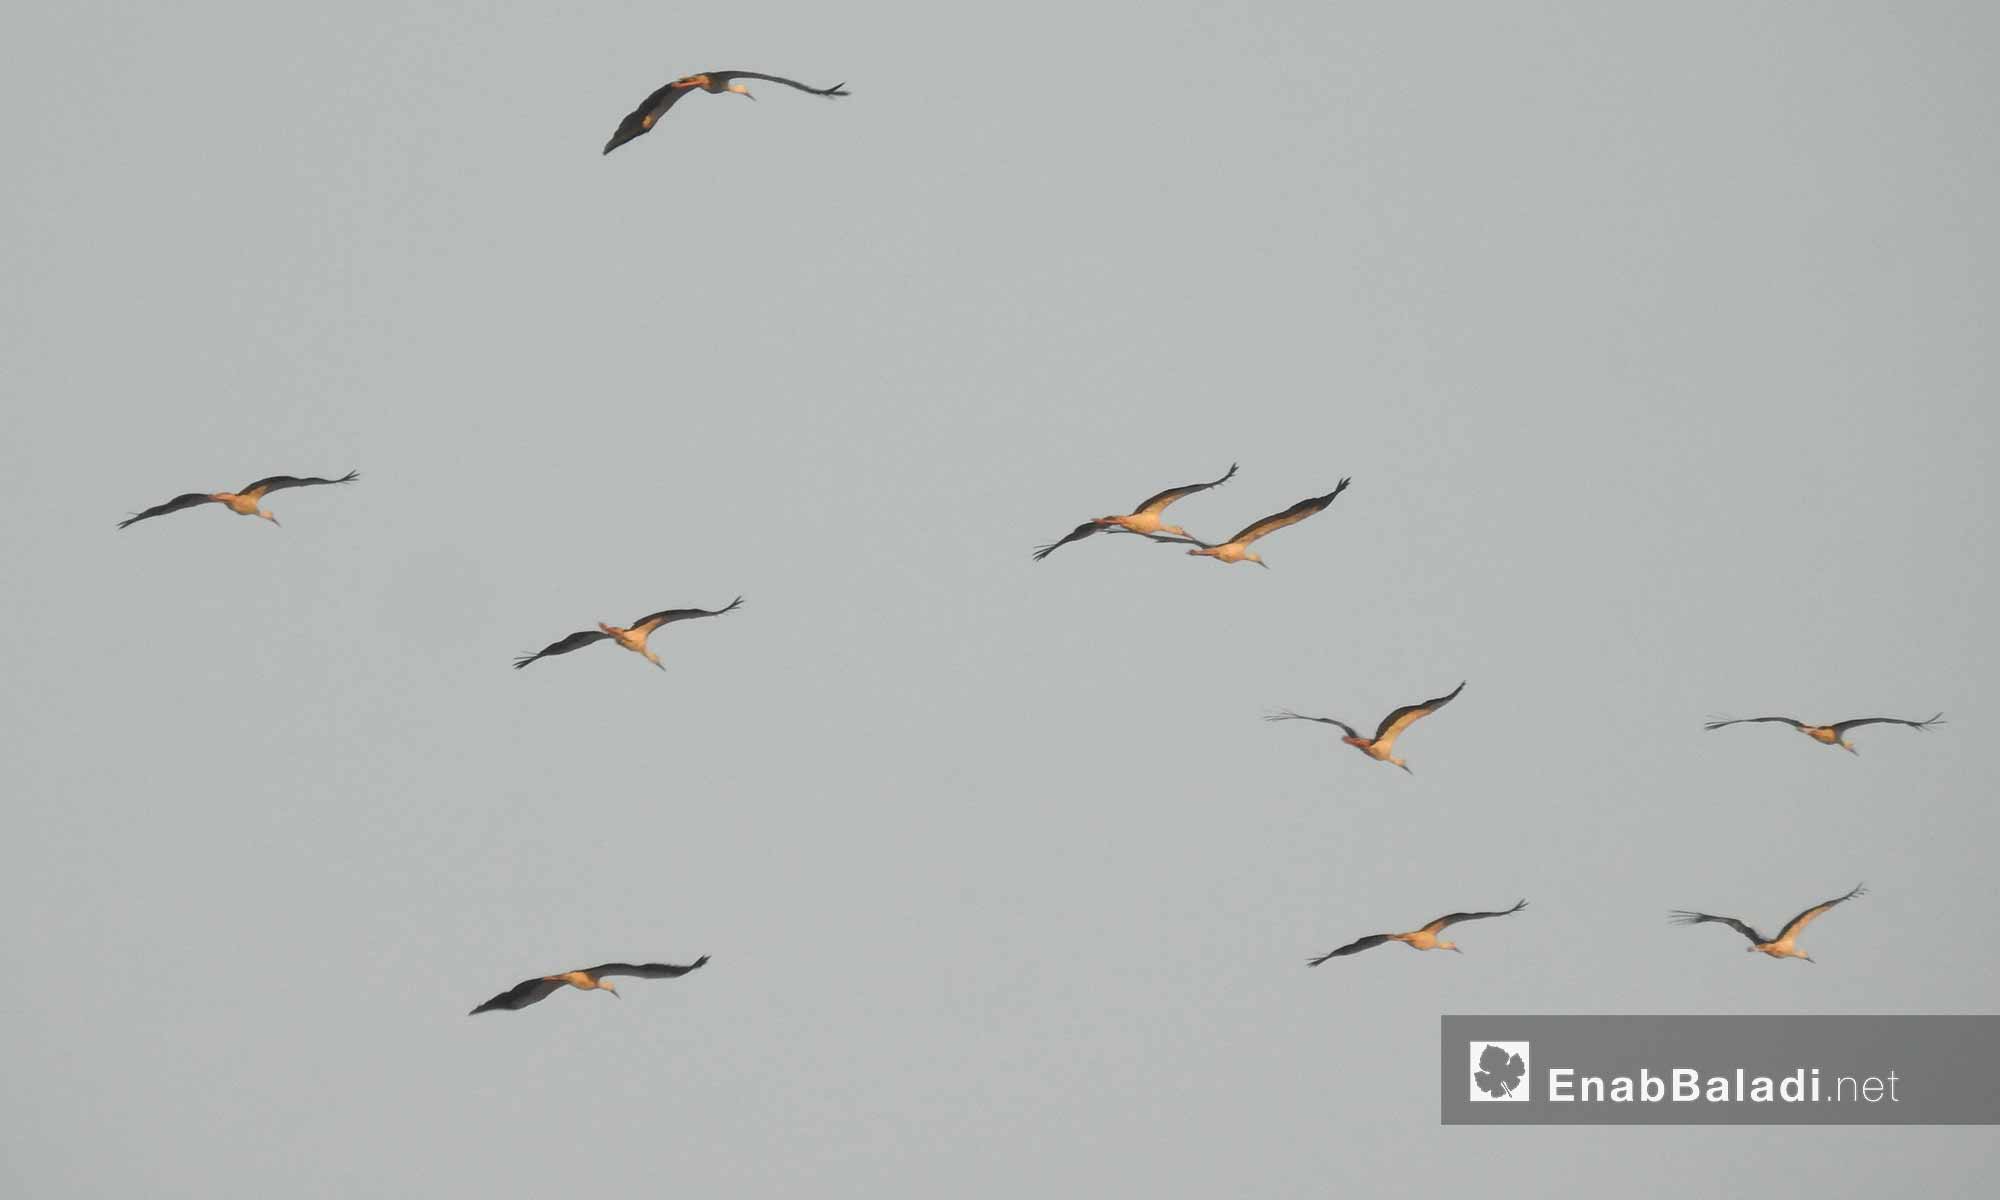 طيور البط المهاجرة في سماء ريف حلب الشمالي - 15 آب 2017 (عنب بلدي)